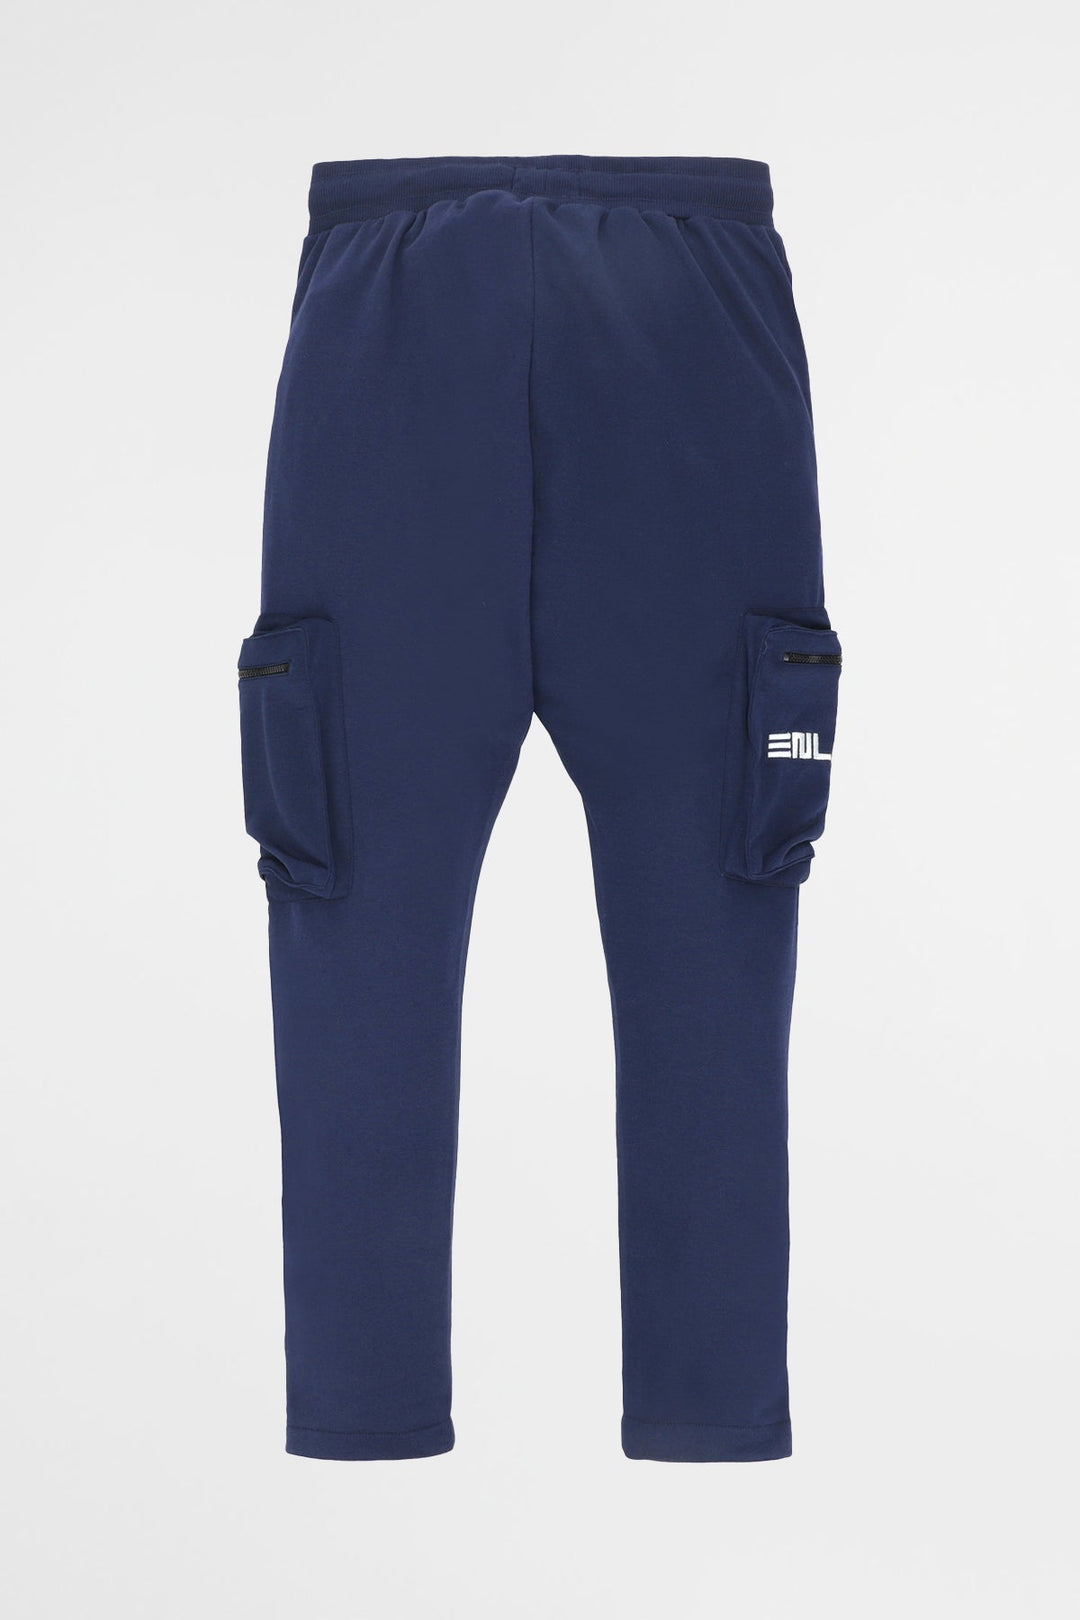 Enlive Navy Blue Trouser